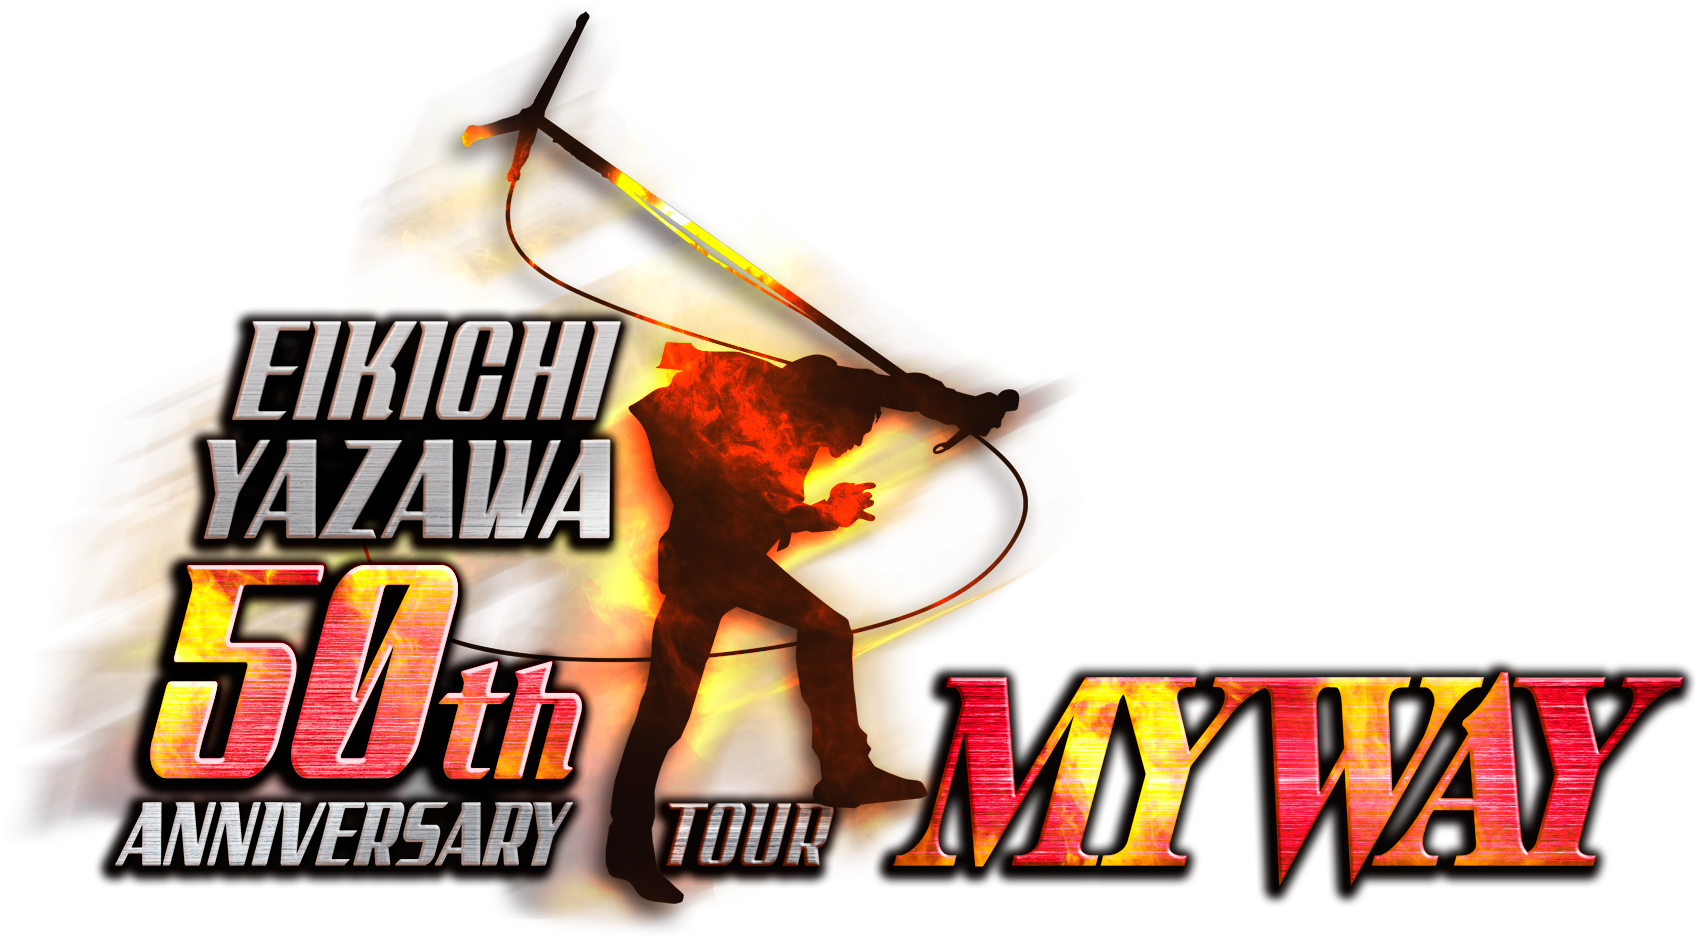 EIKICHI YAZAWA 50th ANNIVERSARY TOUR「MY WAY」